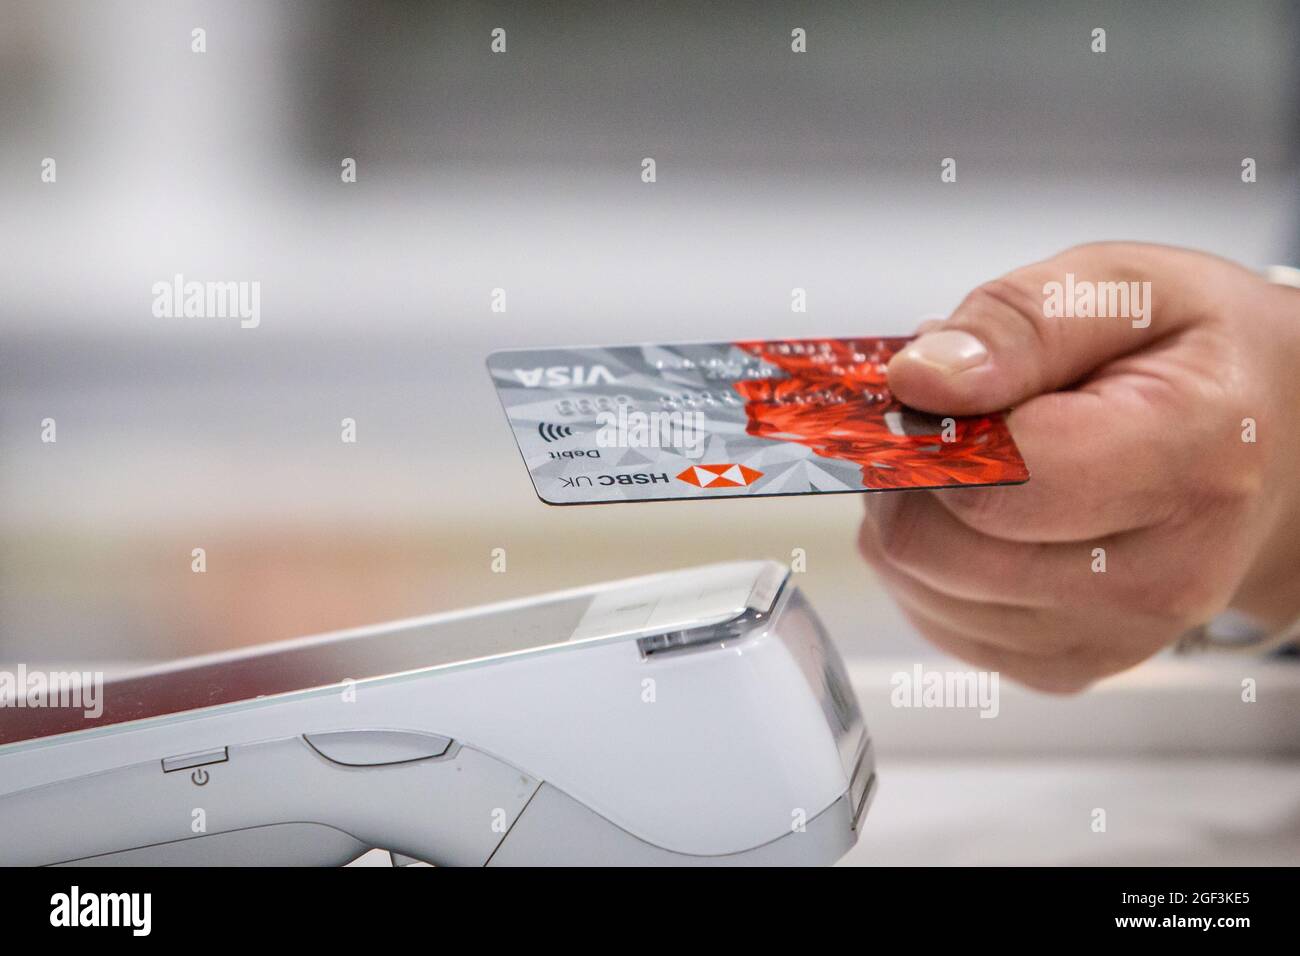 Primo piano di una carta di debito bancaria utilizzata per l'acquisto tramite contactless. Foto Stock